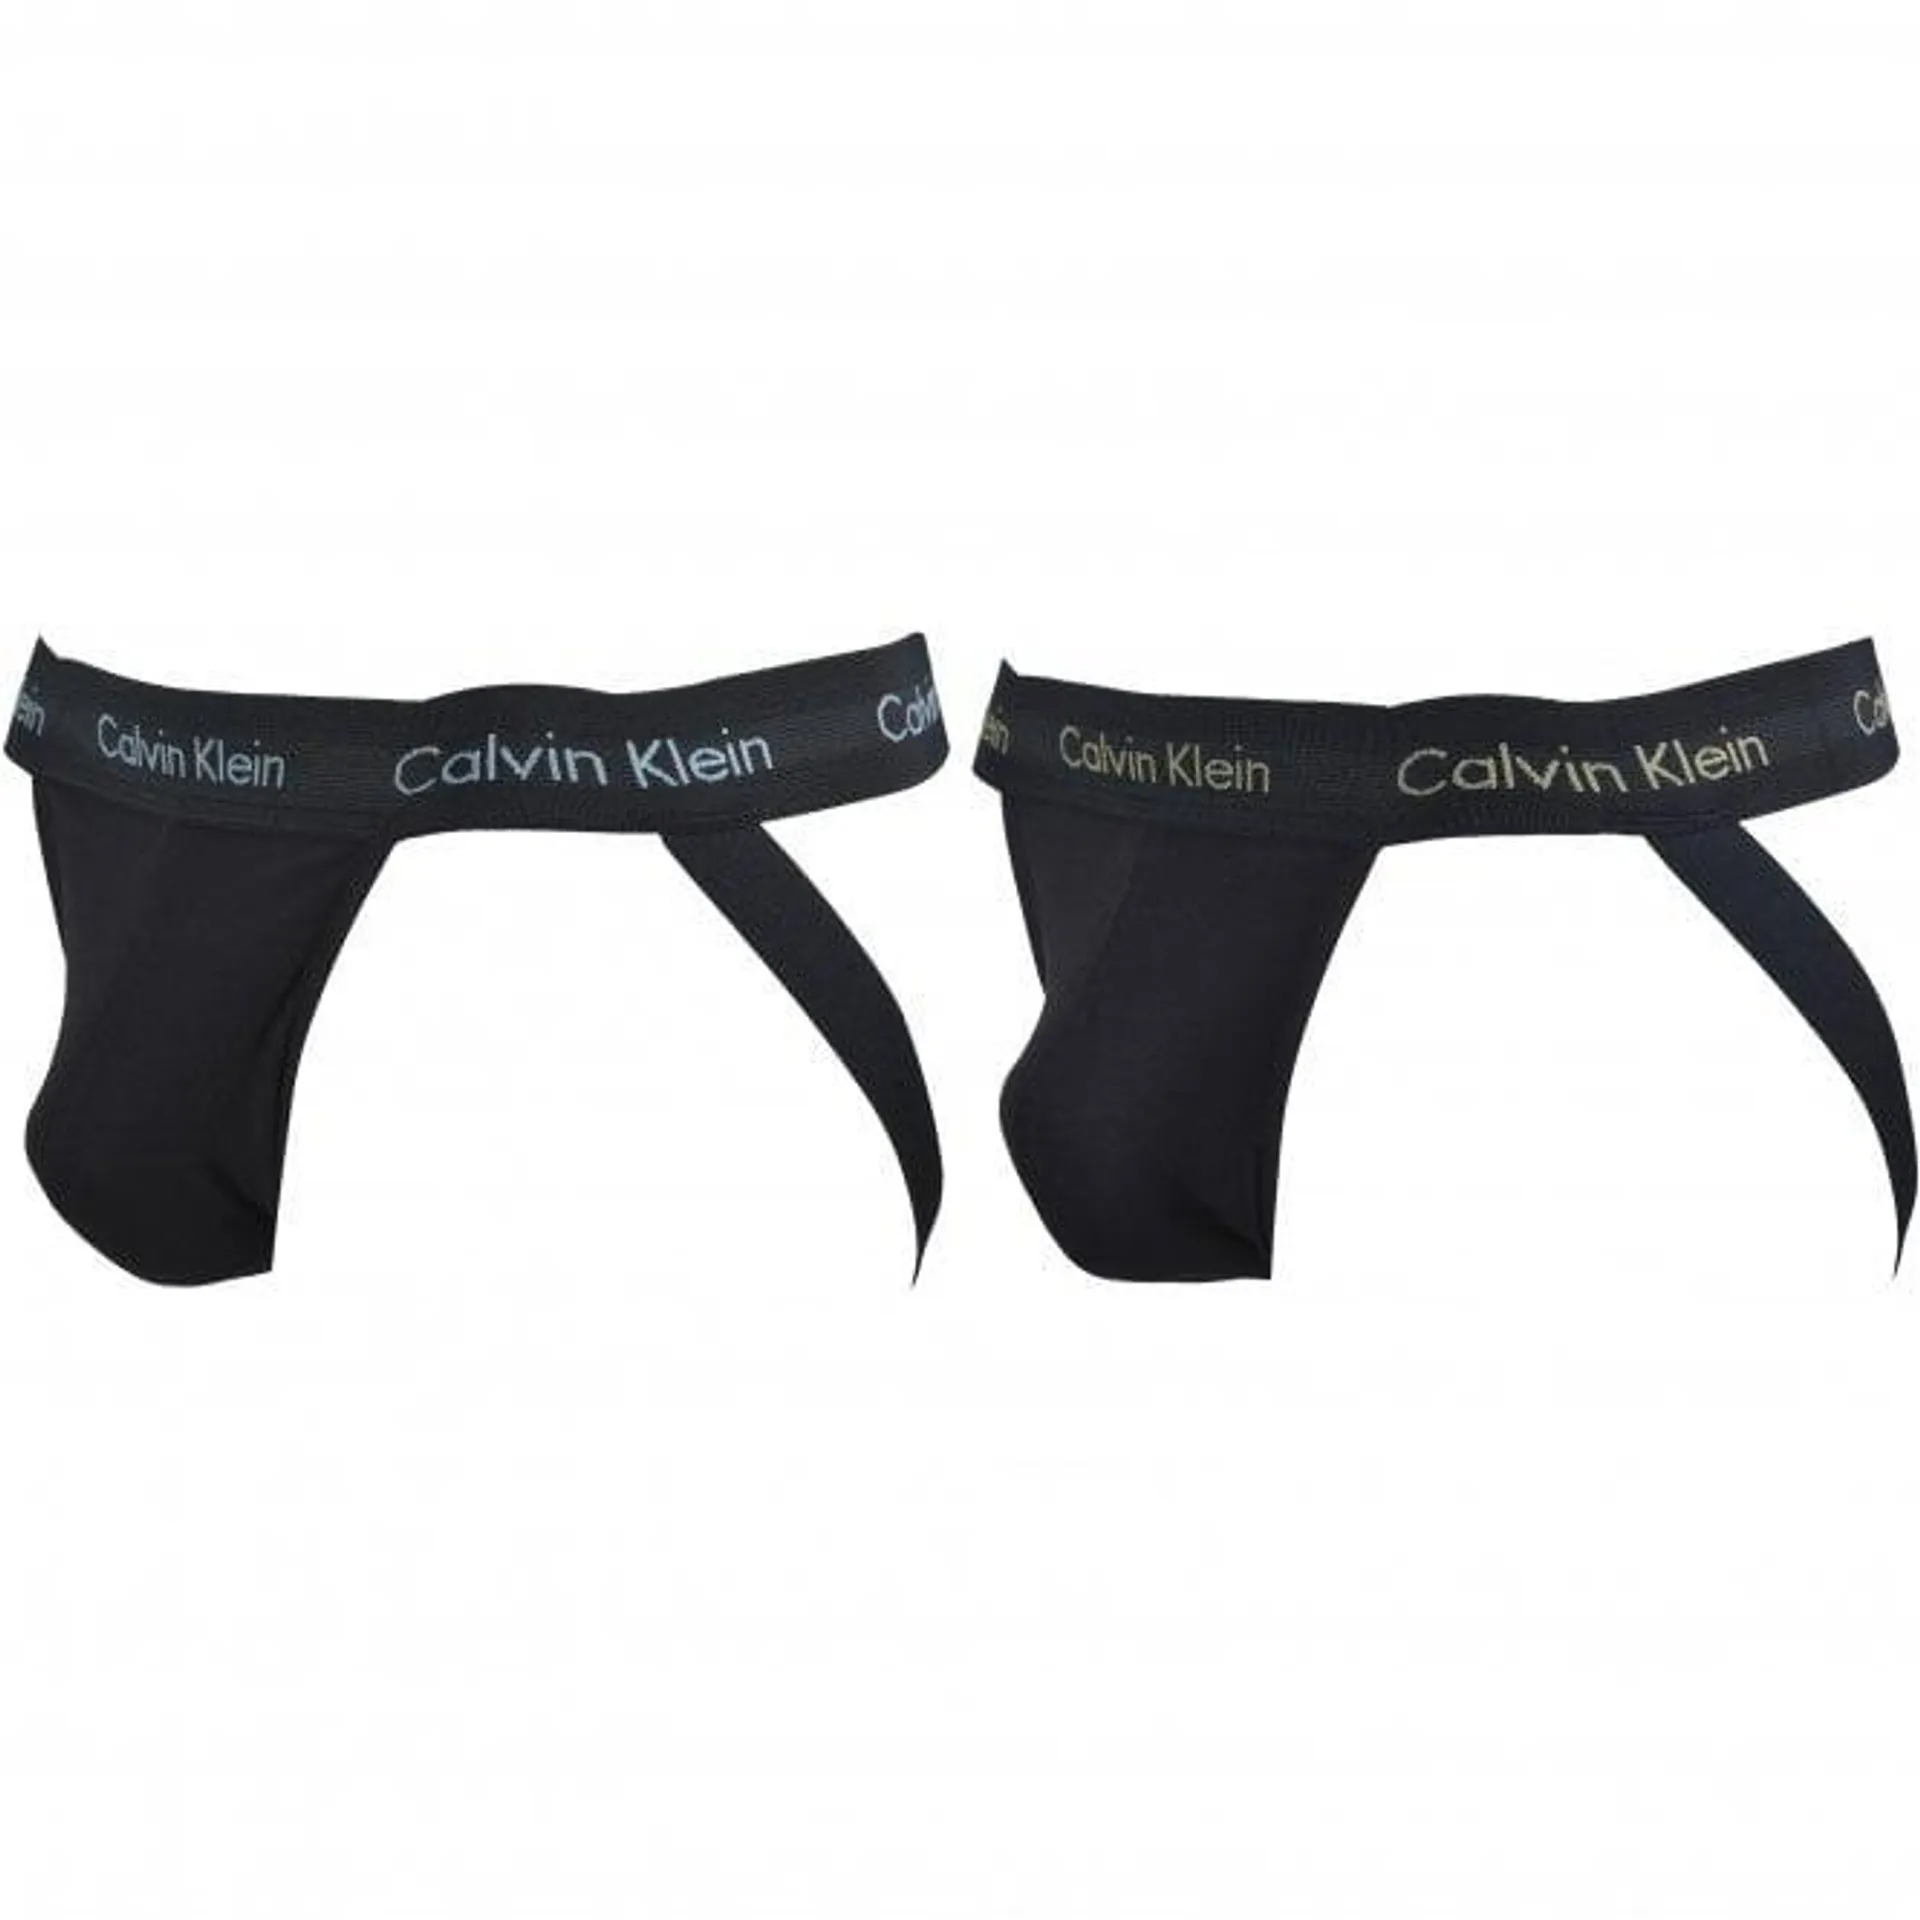 Calvin Klein 2-Pack Cotton Stretch Jockstraps, Black w/ blue/khaki